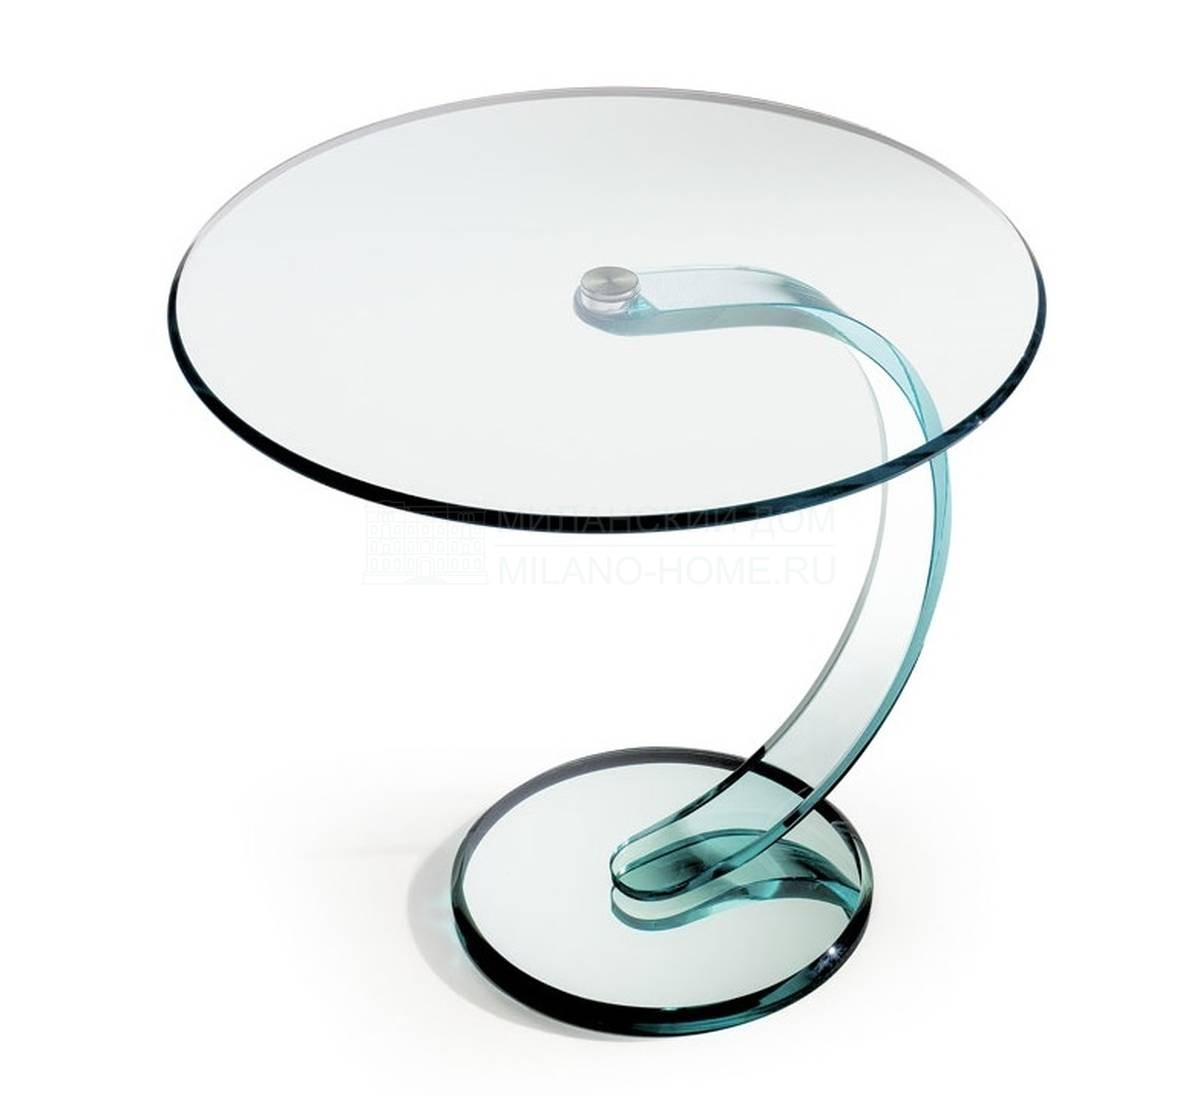 Кофейный столик Less из Италии фабрики REFLEX ANGELO